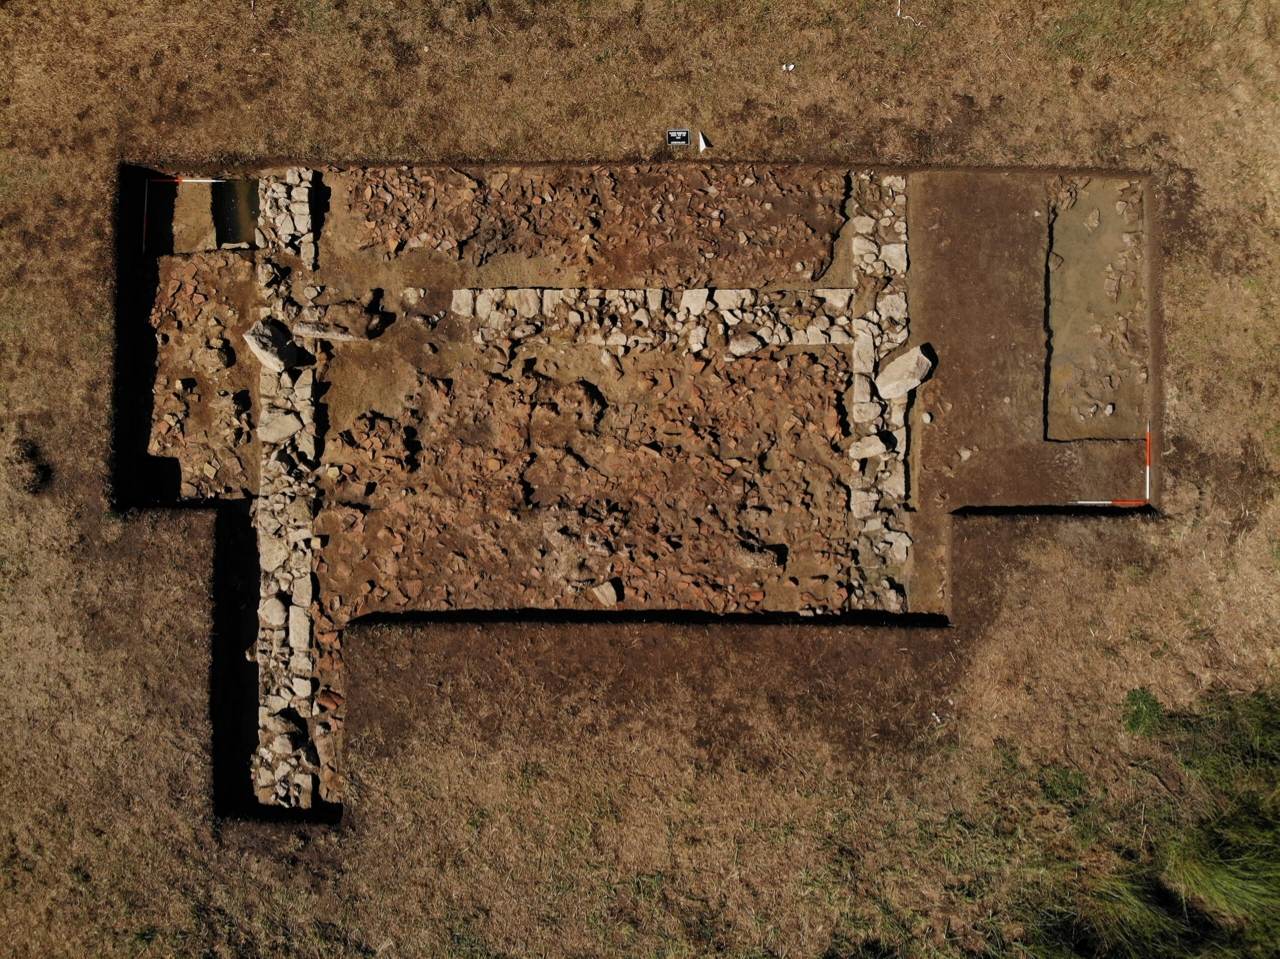 ગ્રીસ 2 માં સમિકોન નજીક ક્લેઈડી સાઇટ પર સ્થિત પોસાઇડન મંદિરની શોધ